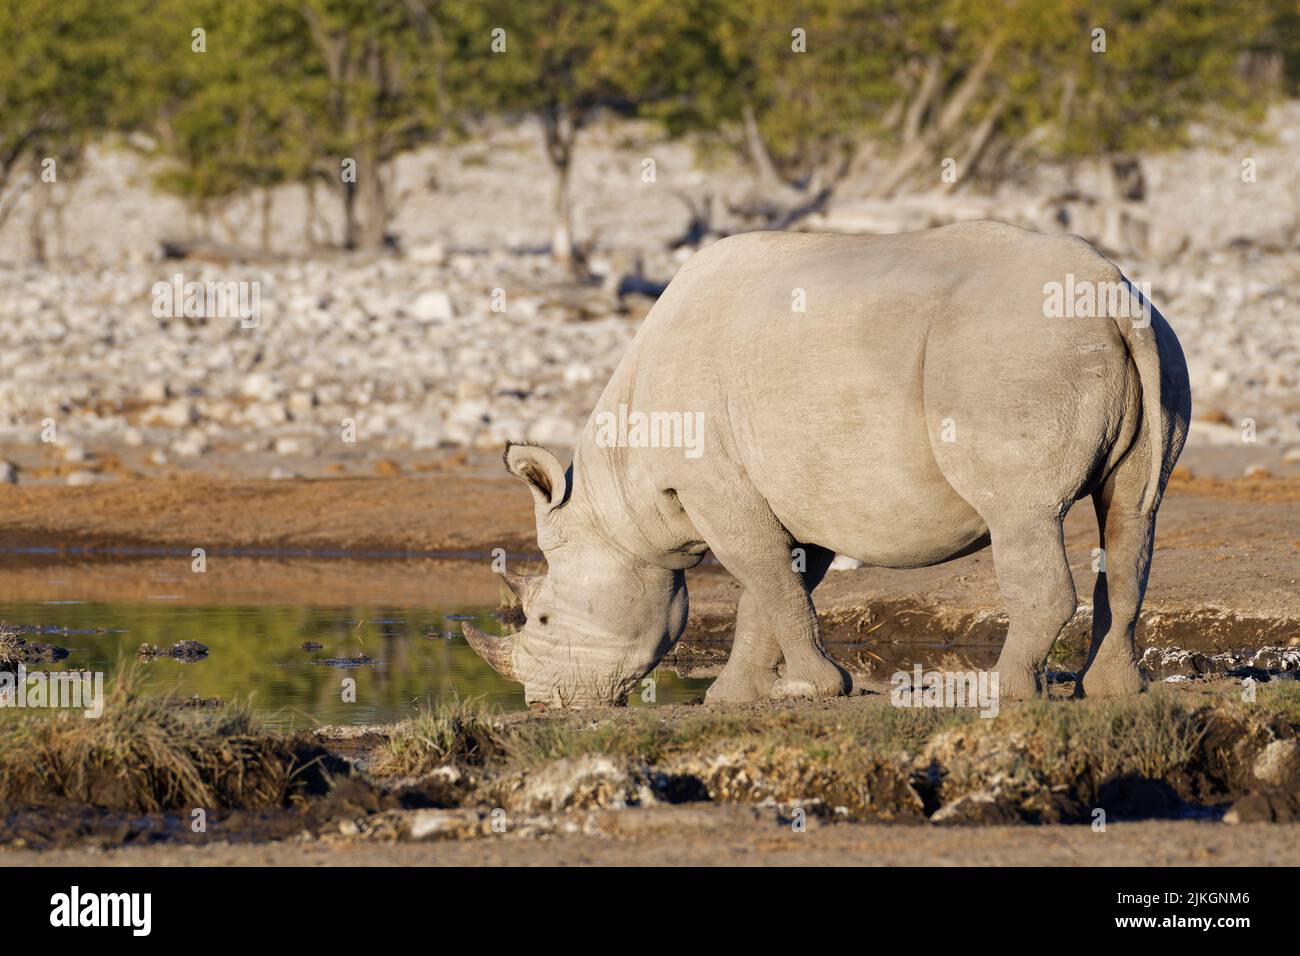 Black rhinoceros (Diceros bicornis), adult male, drinking at waterhole, Etosha National Park, Namibia, Africa Stock Photo